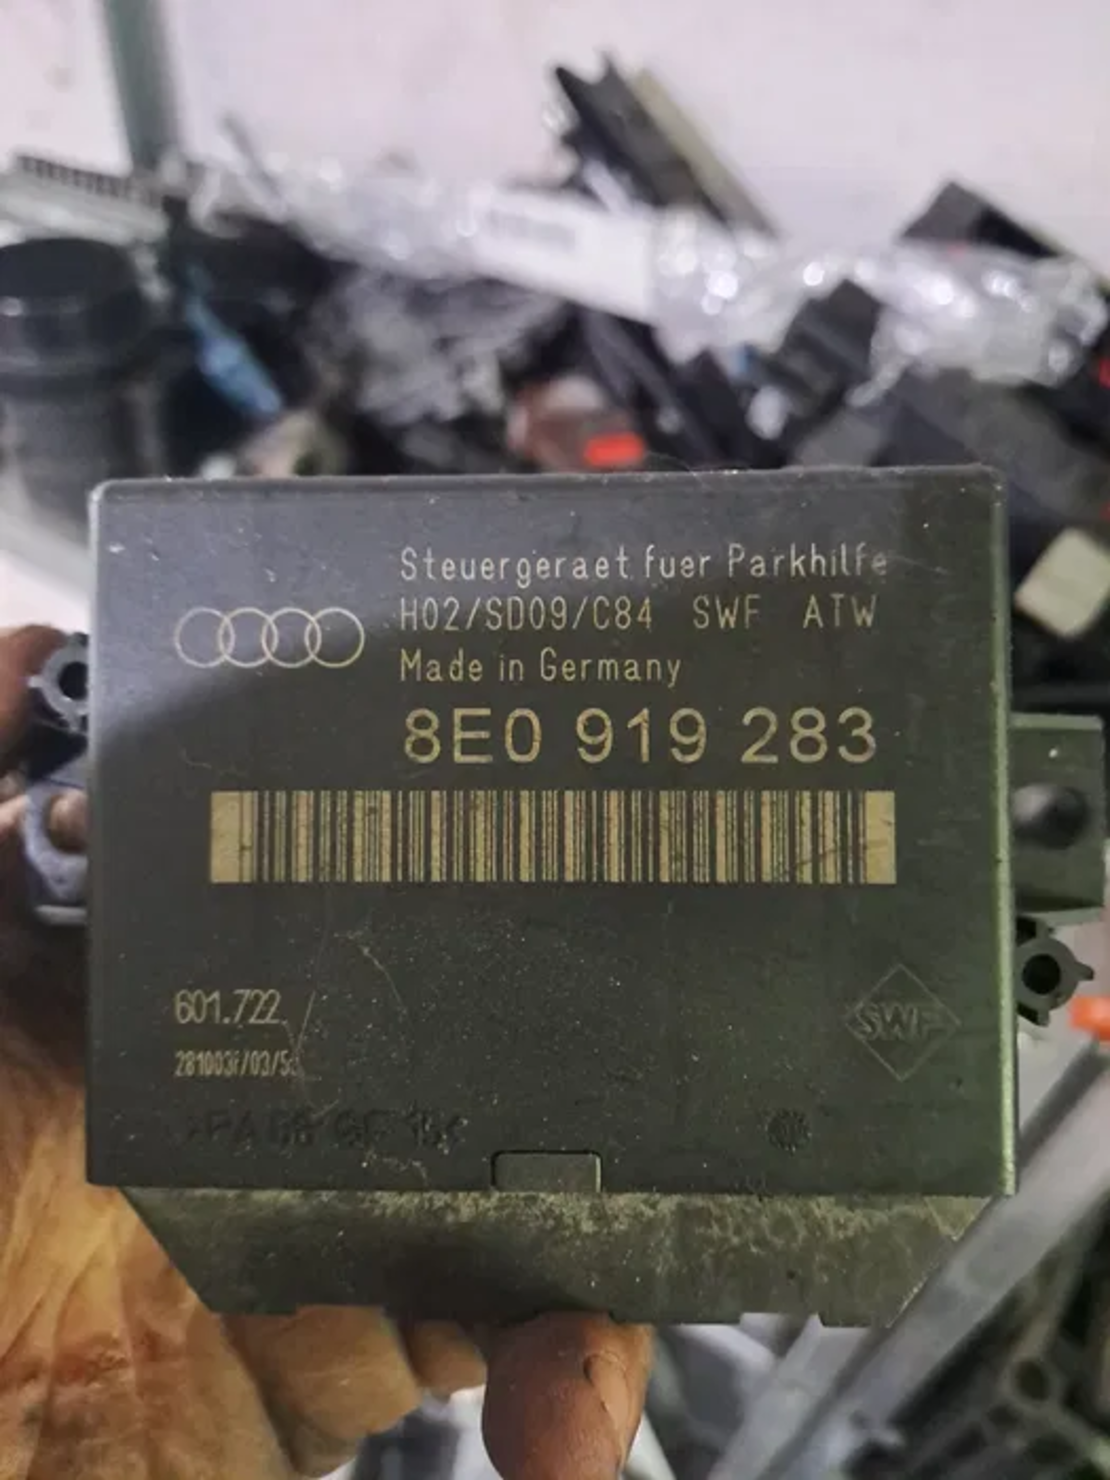 PDC модул за Audi A6 Allroad C5 / 8E0 919 283